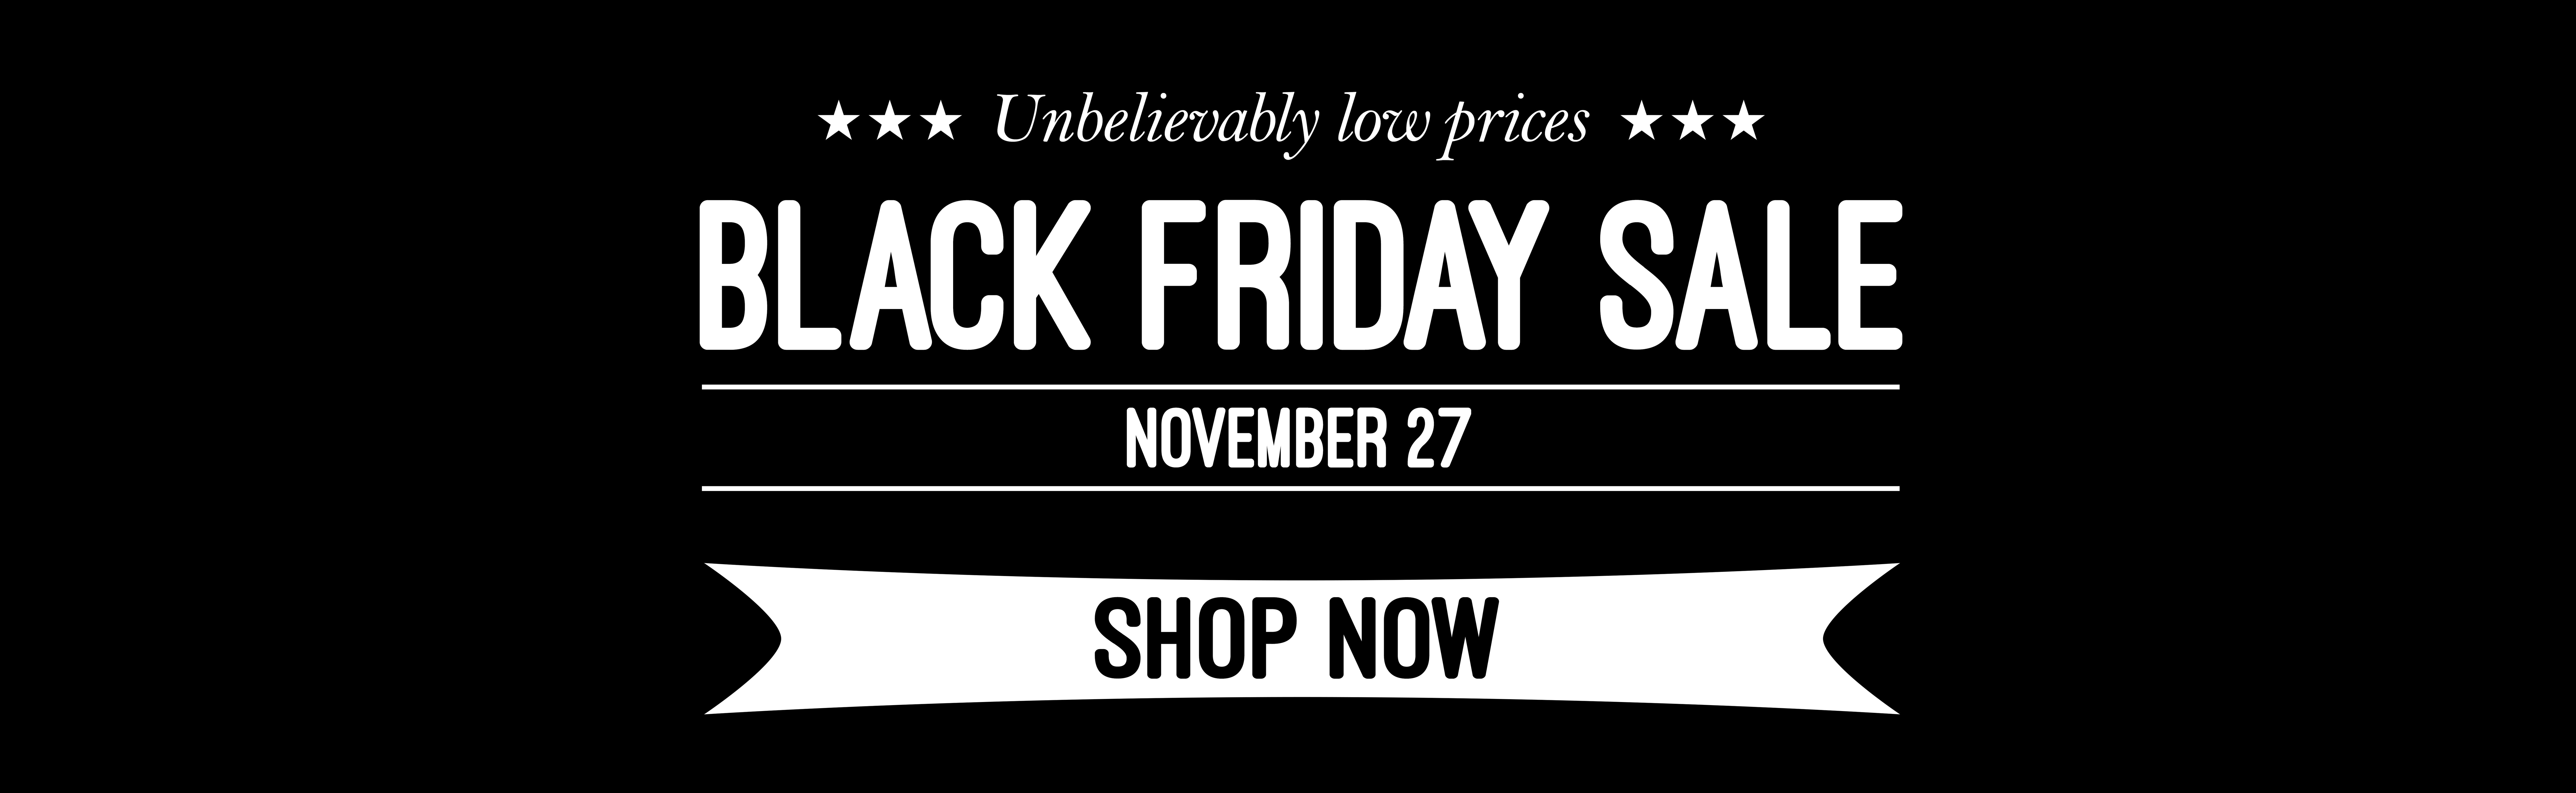 Black friday sale web banner deals